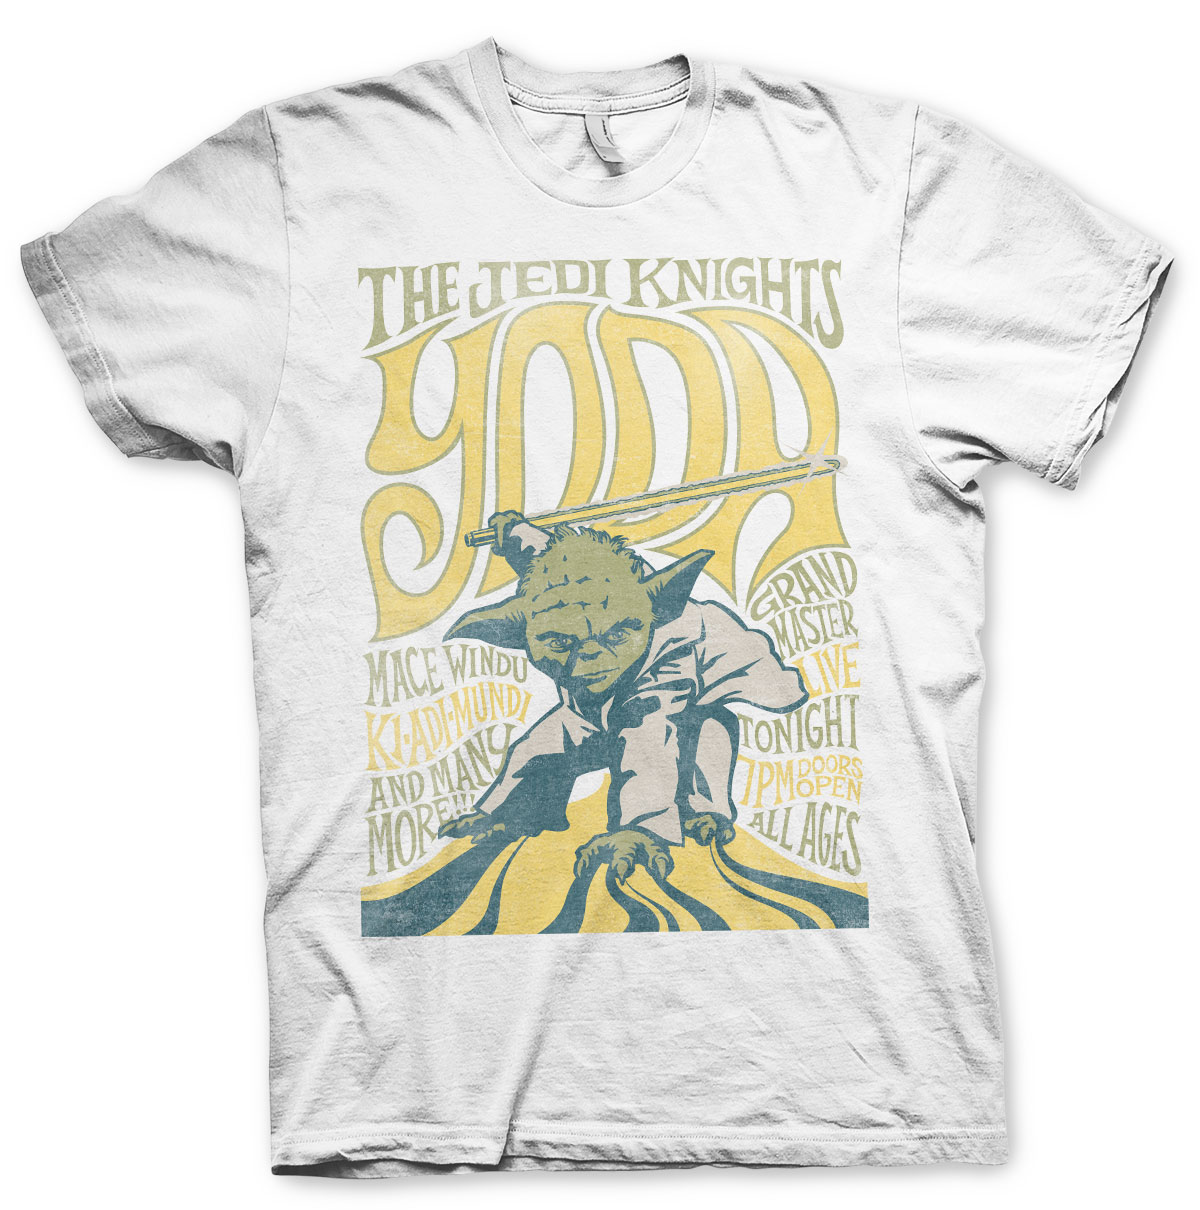 Yoda - The Jedi Knights T-Shirt